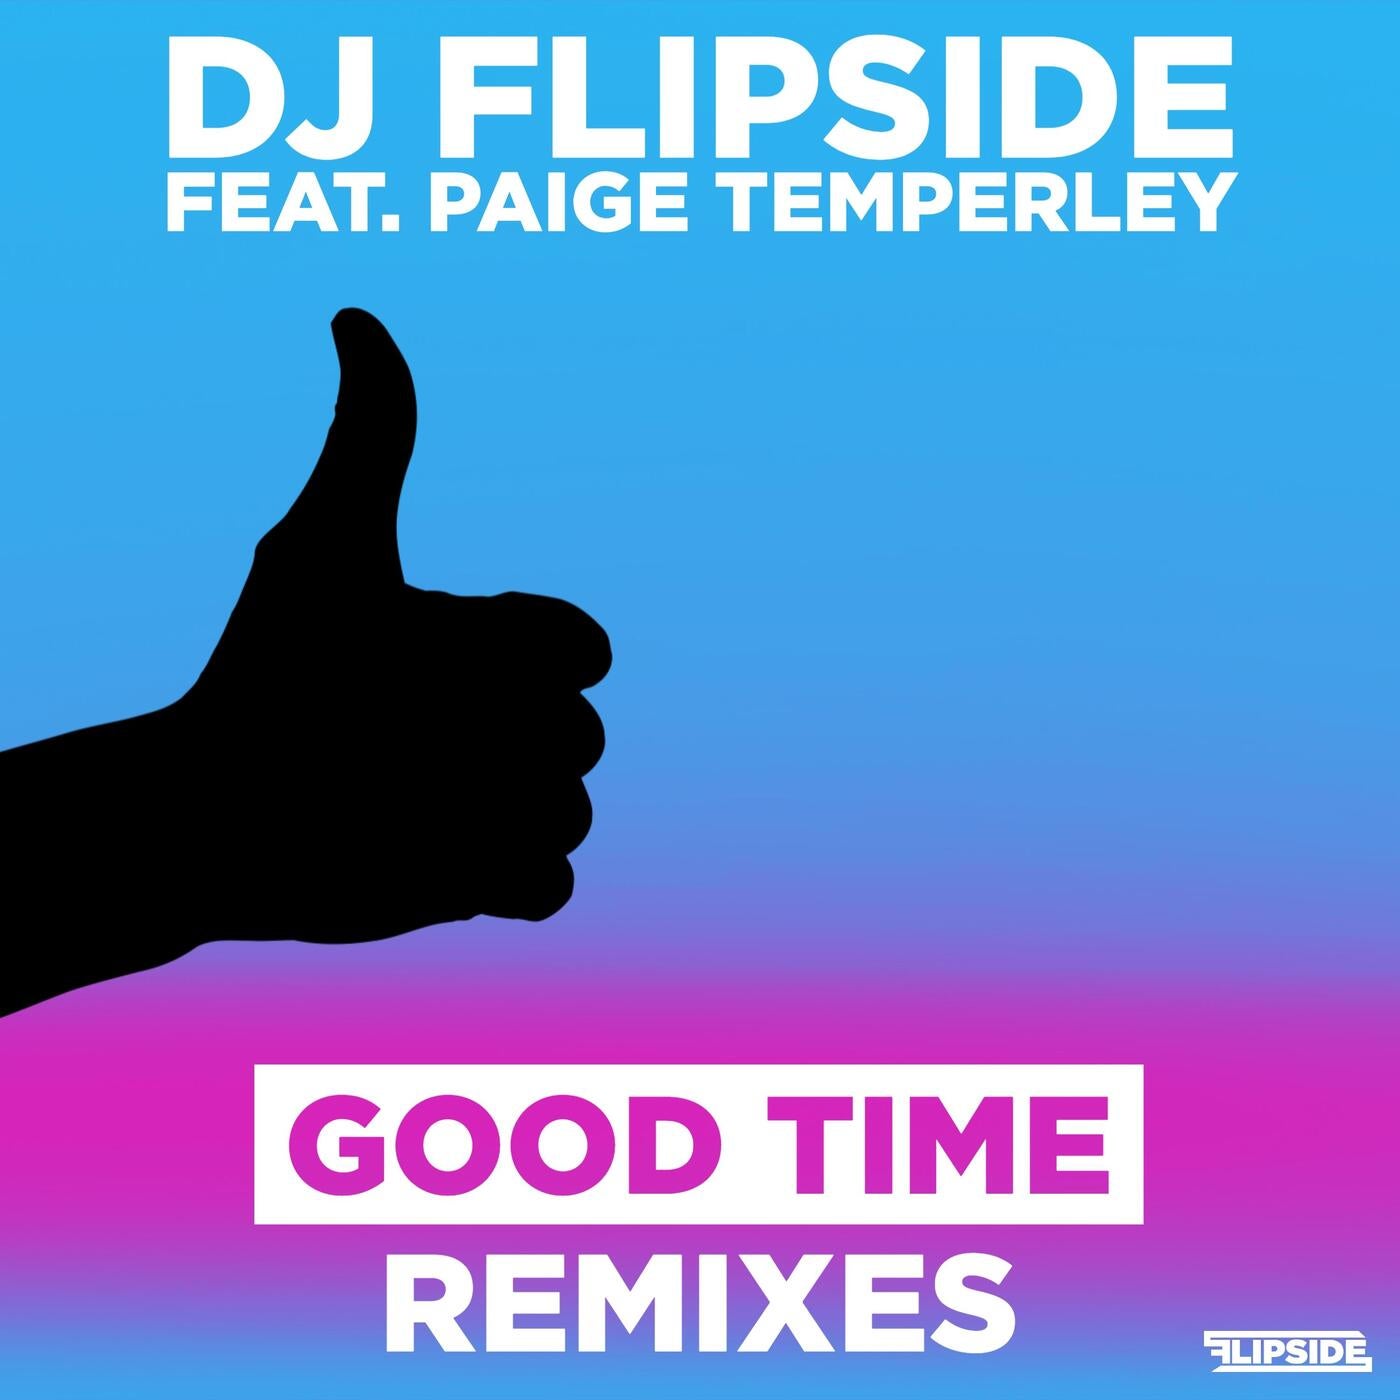 Good Time Remixes